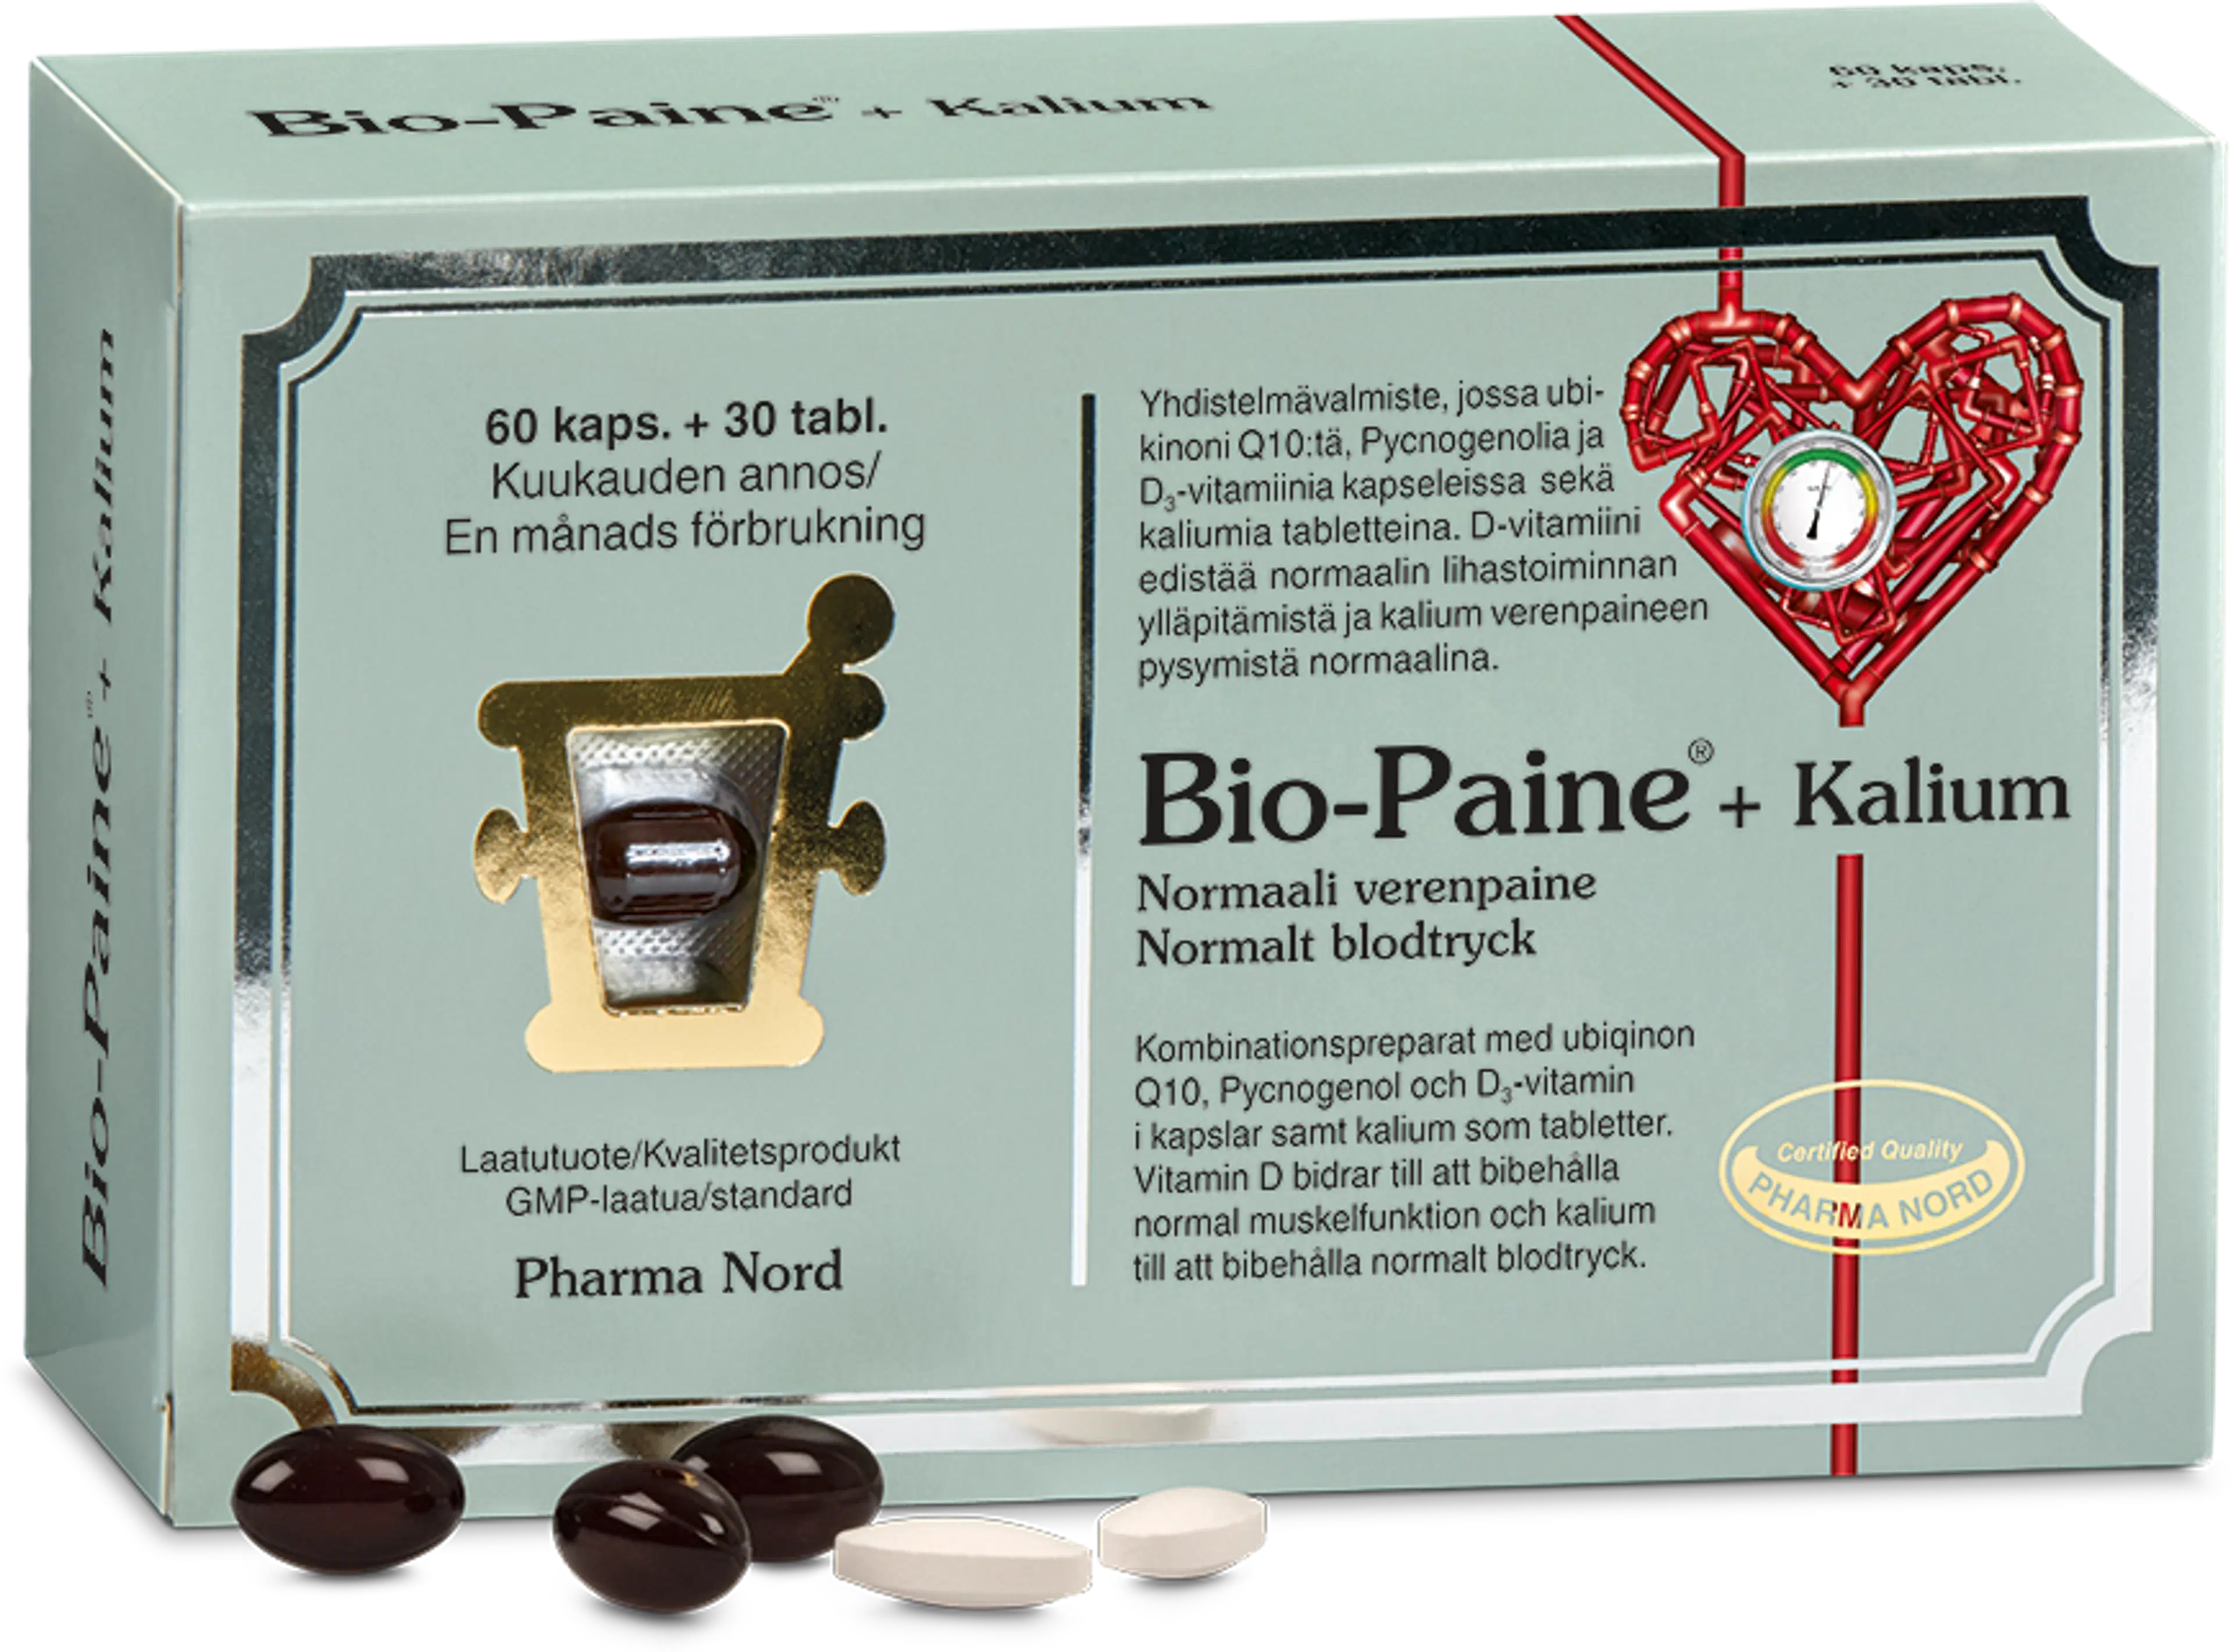 Bio-Paine®+ Kalium ravintolisä 60 kaps. + 30 tabl.